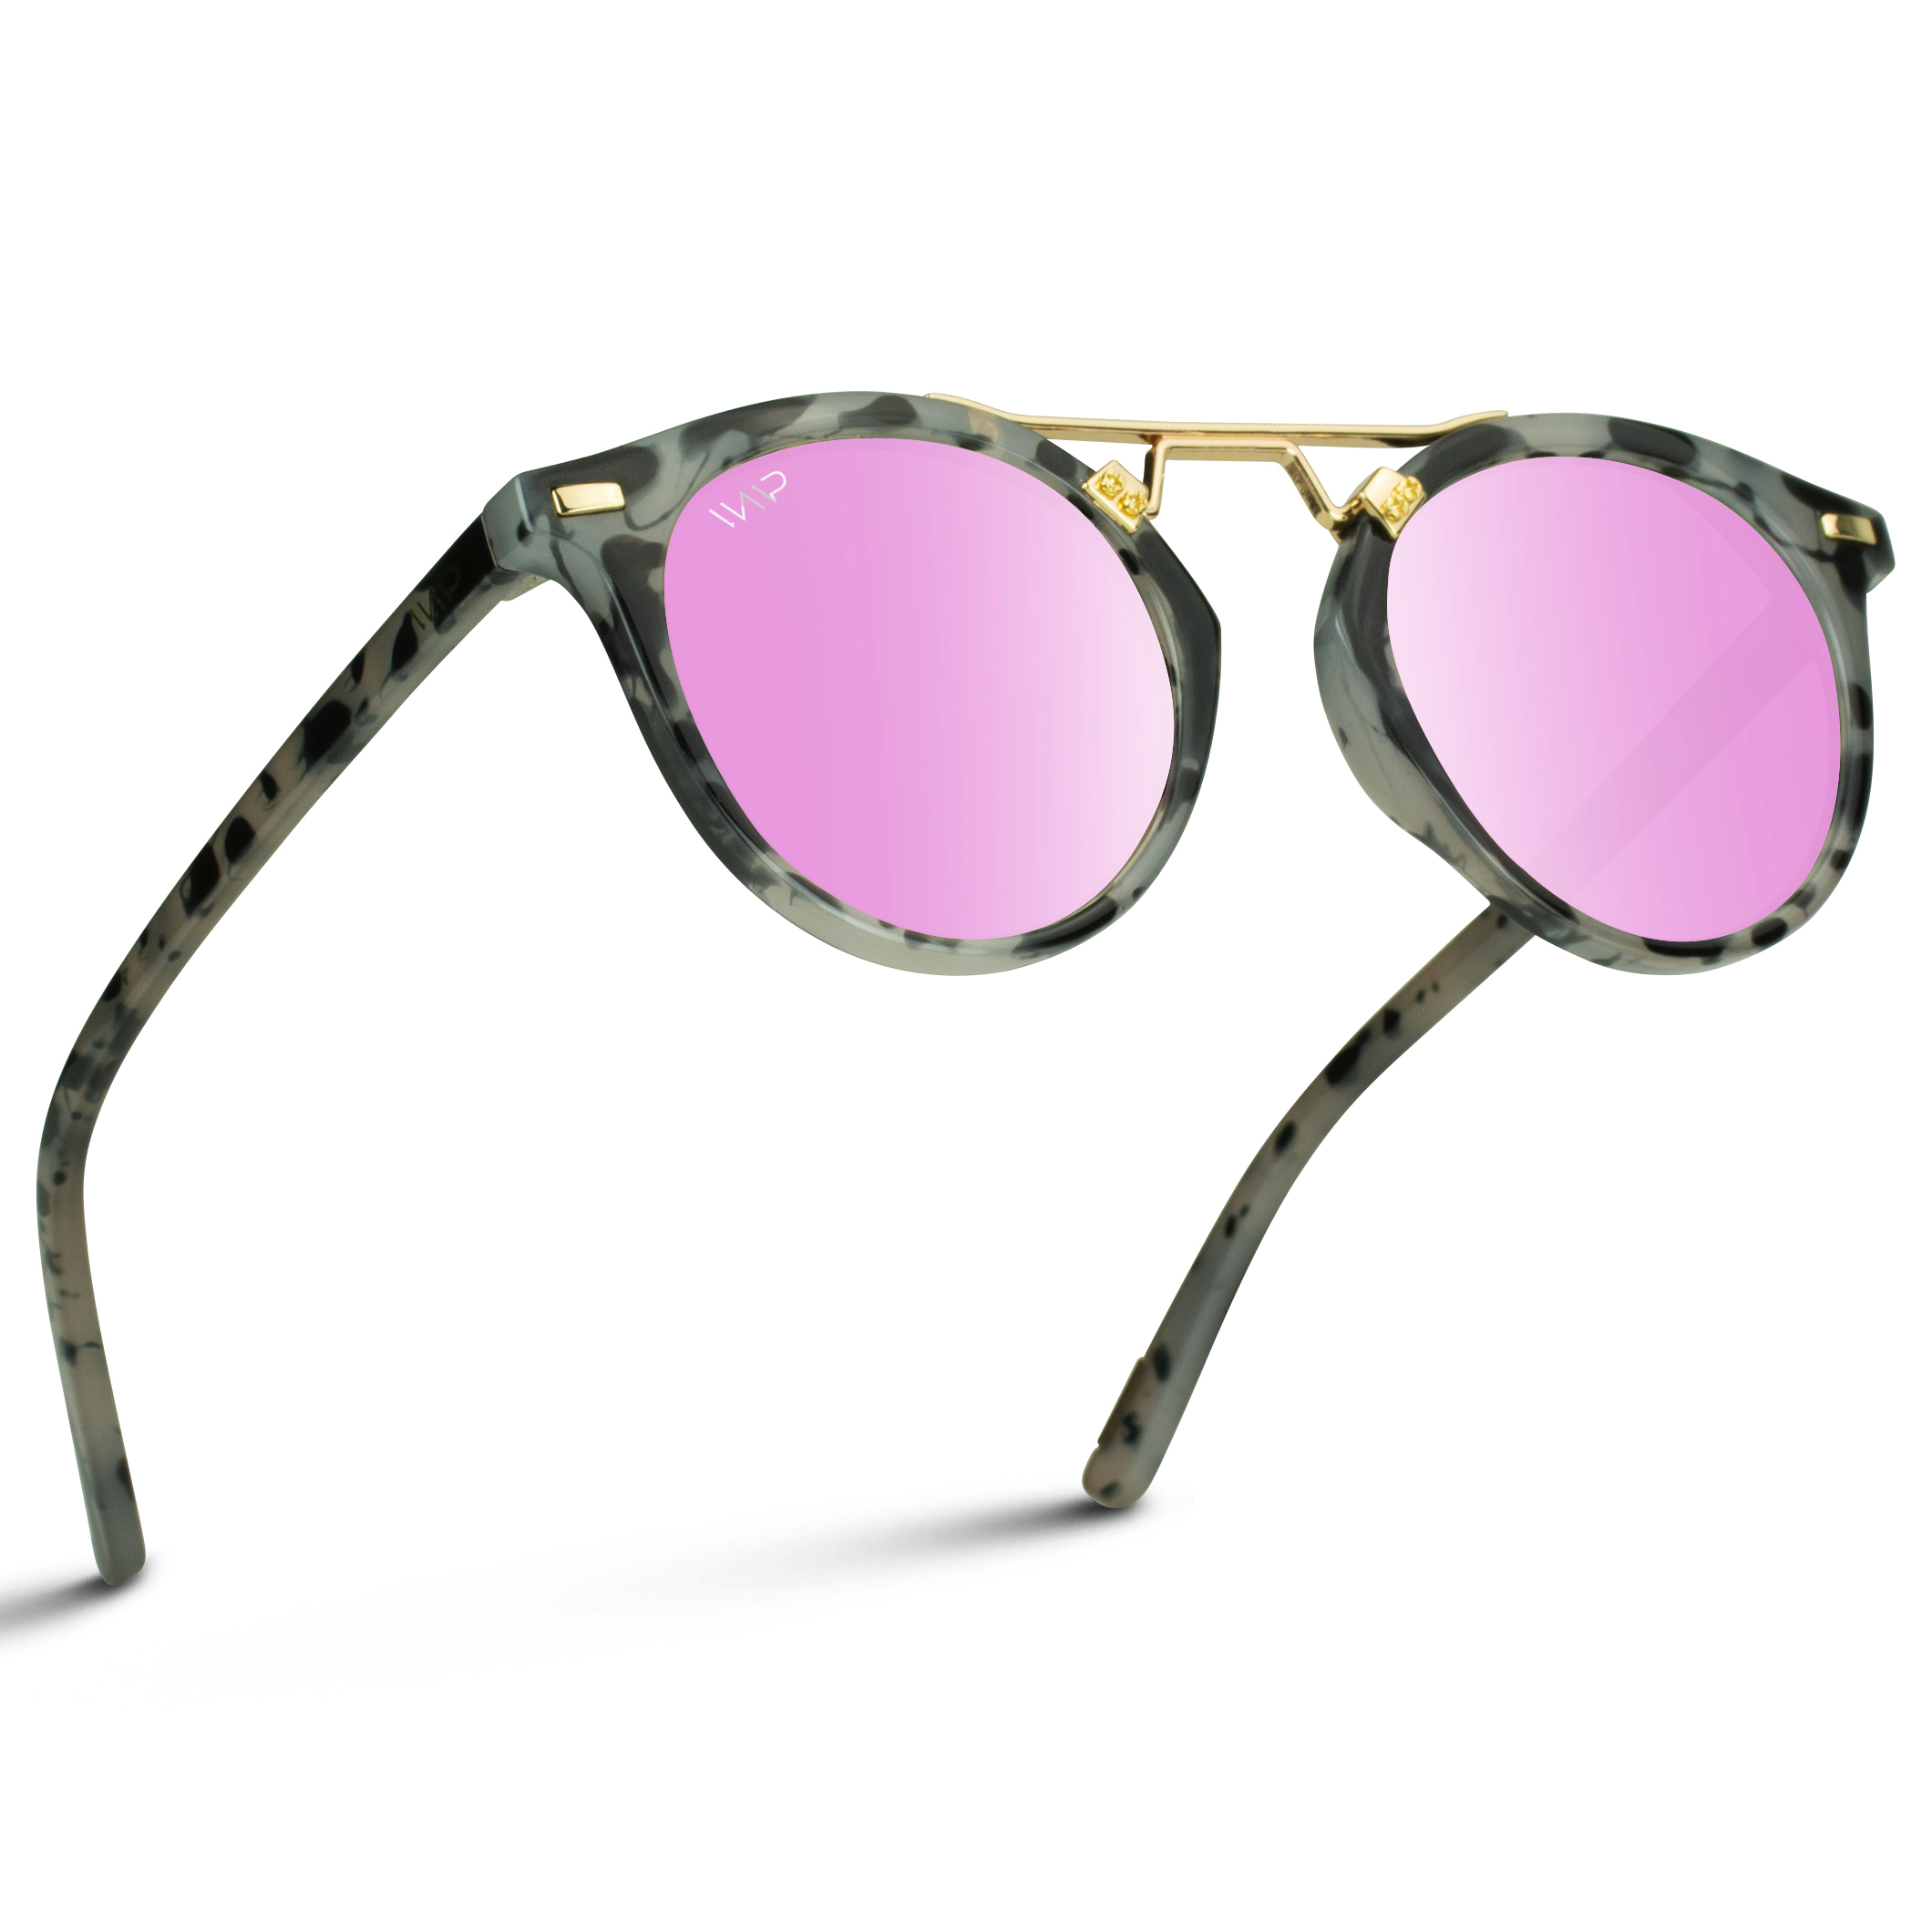 Wearme Pro Polarized Round Vintage Retro Mirrored Lens Women Metal Frame Sunglasses 